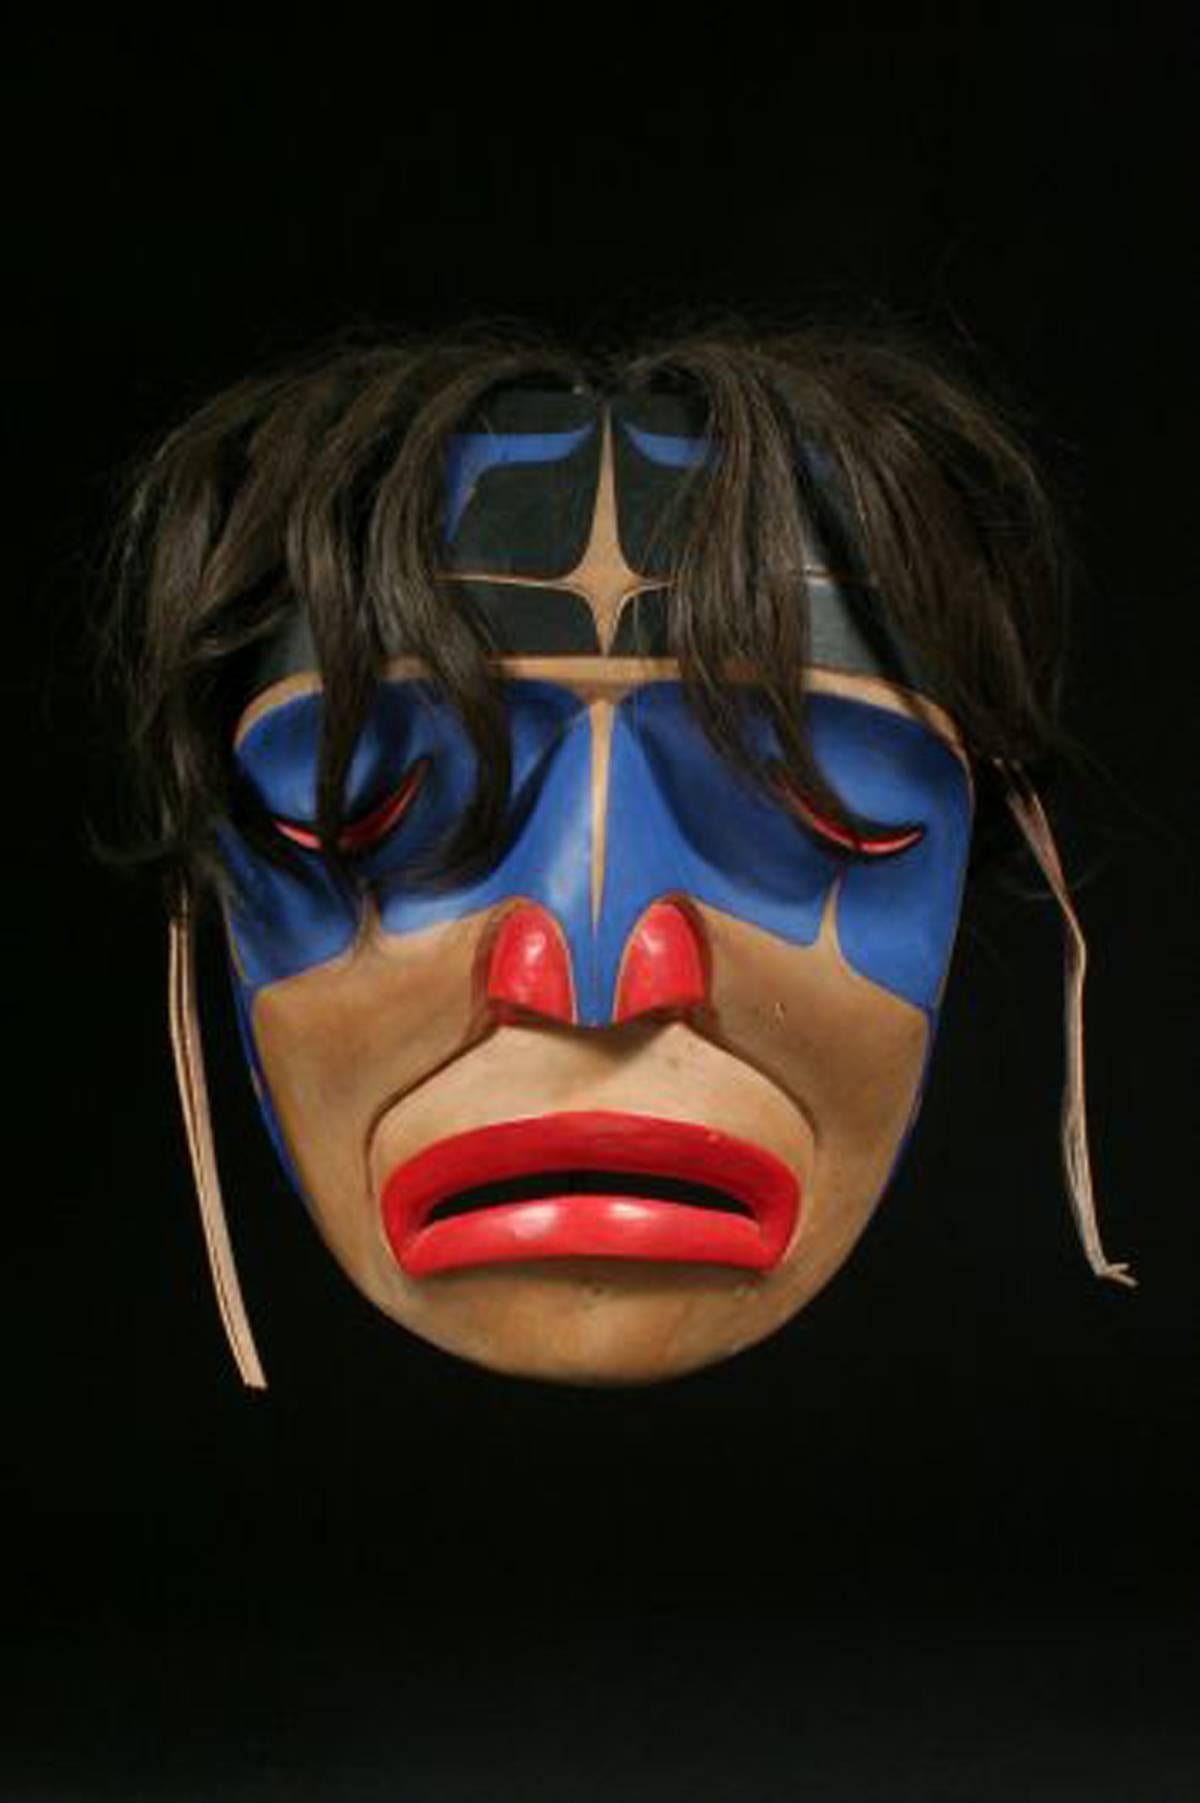 20. Jahrhundert Nordwestküste Indianer signiert Tribal Crying Mask George Hunt Jr.
Kwakiutl, Britisch-Kolumbien
Zedernholz, Pferdehaar, Leder, Farbe

Eine auffällige, grafische Maske mit dem unverwechselbaren Stil der Nordwestküste, mit klaren